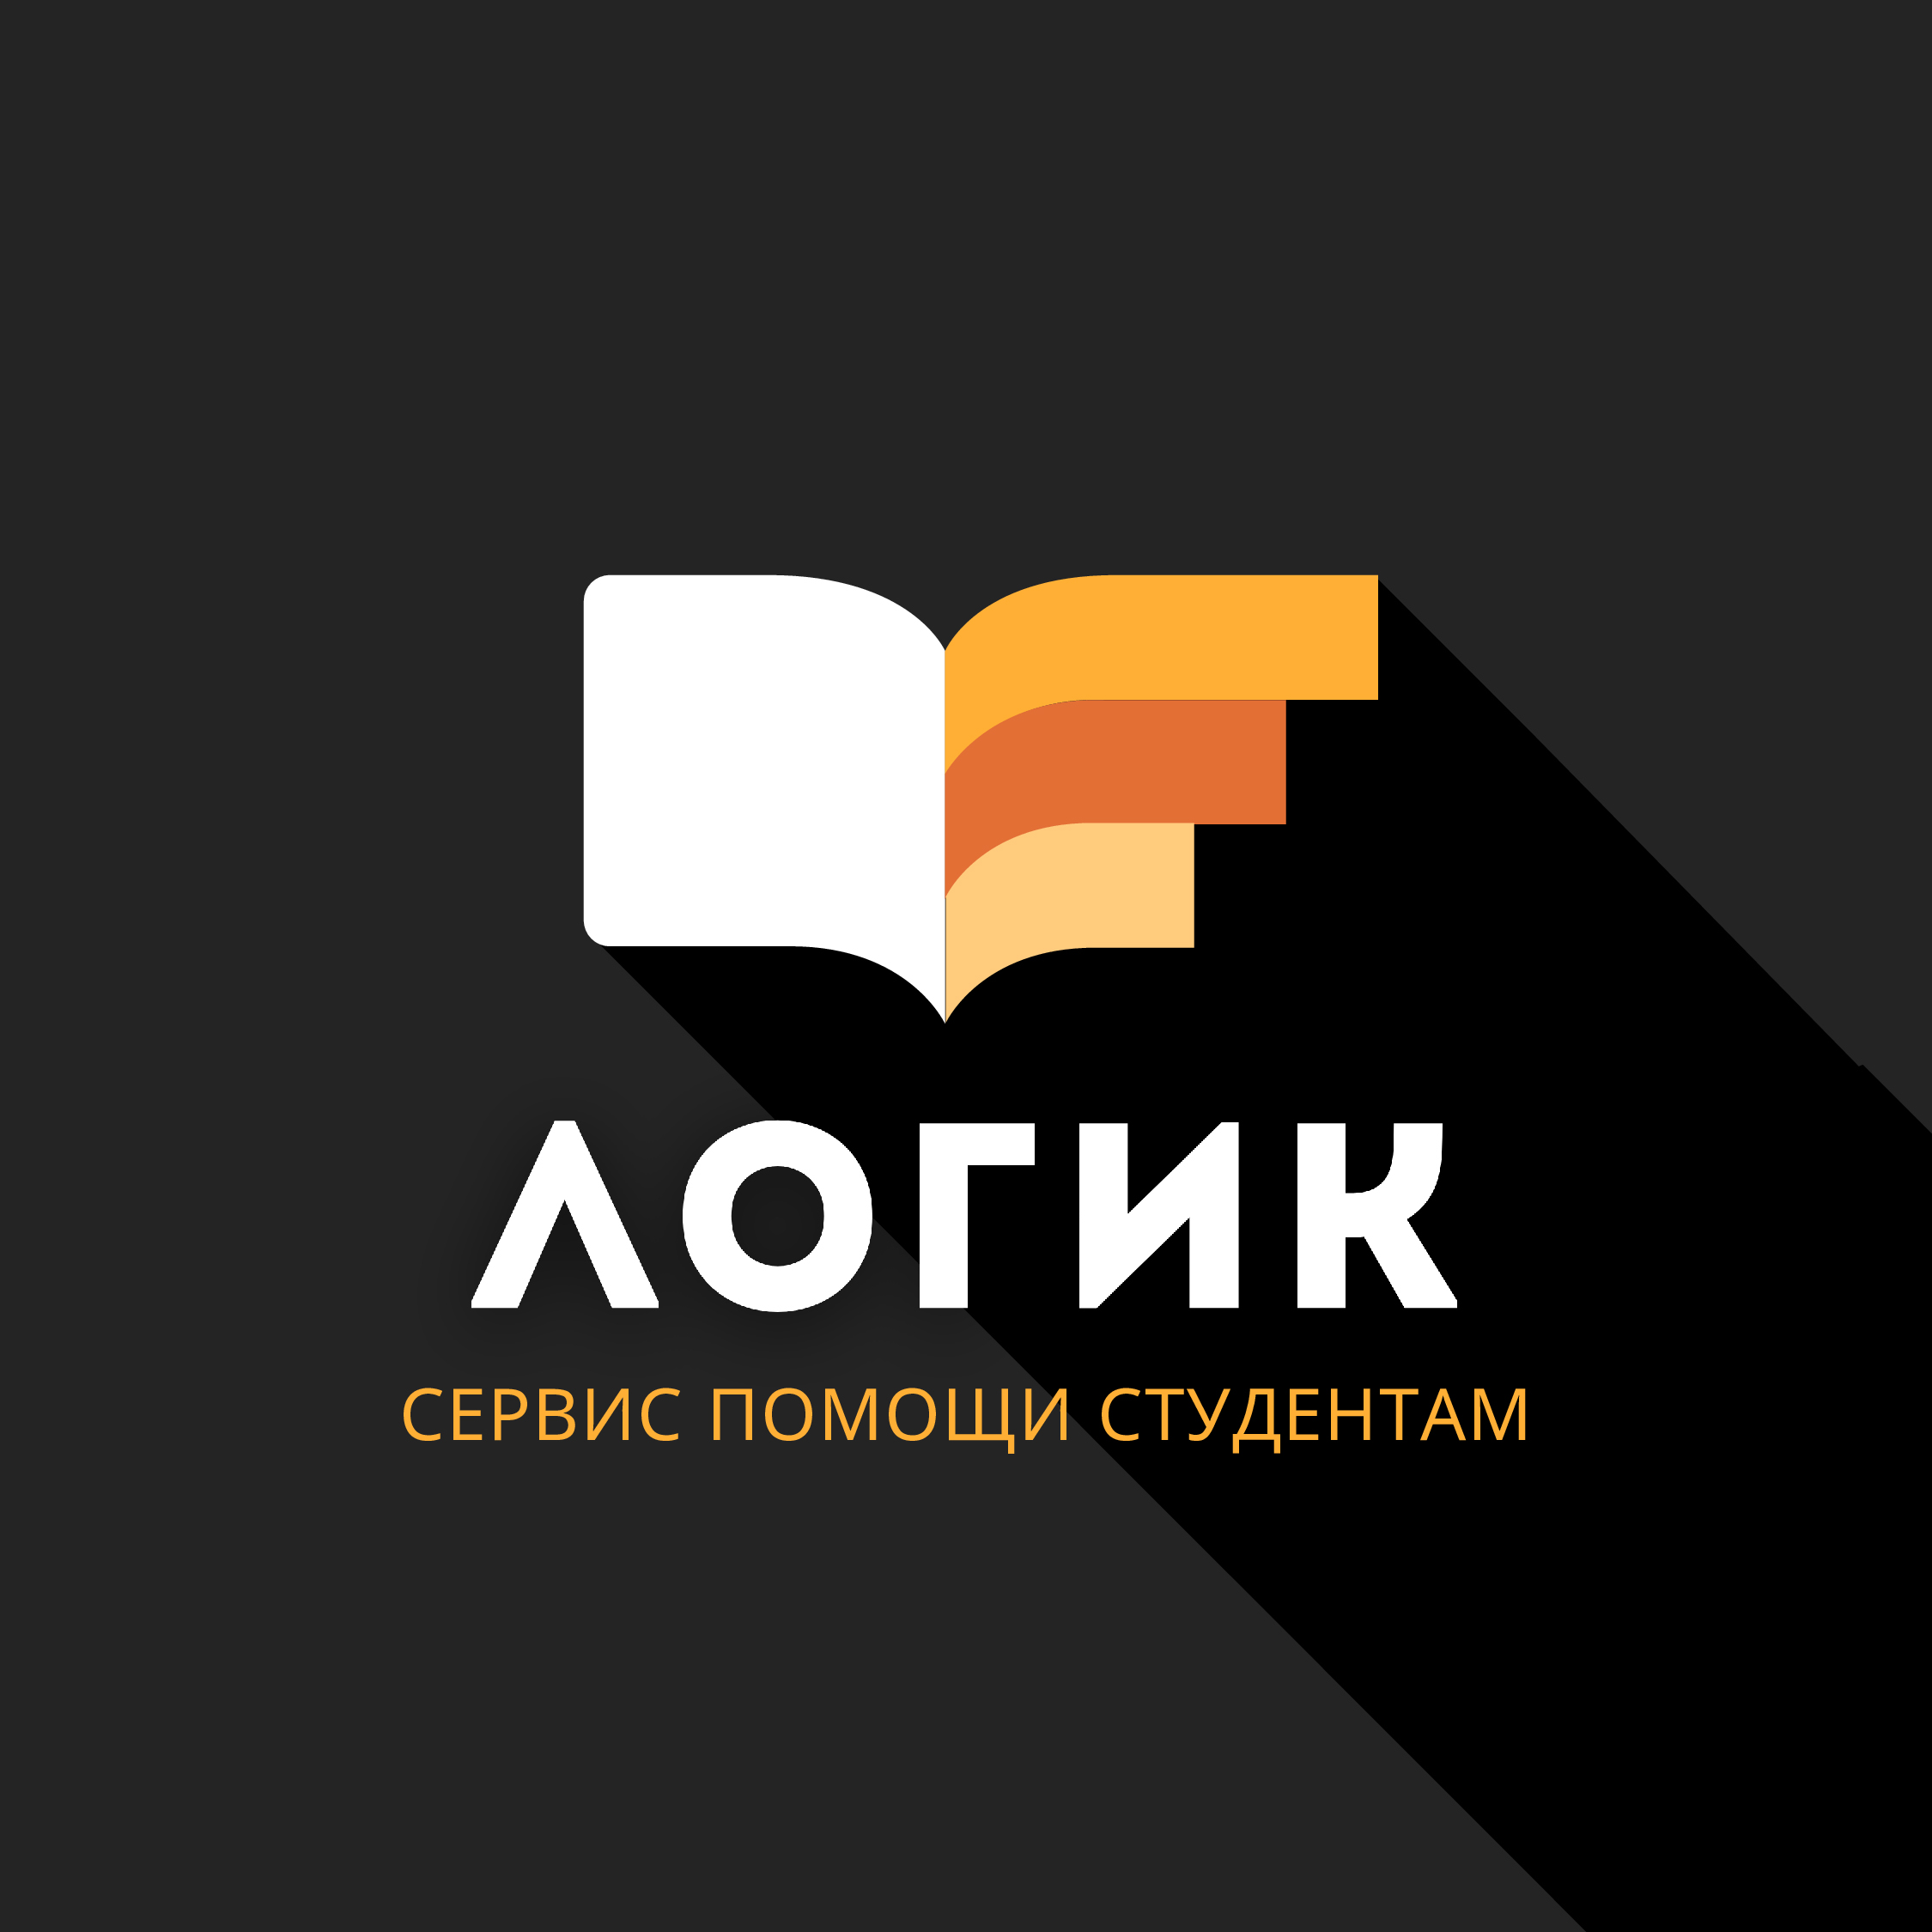 Логик — сервис помощи студентам и аспирантам в Красноярске